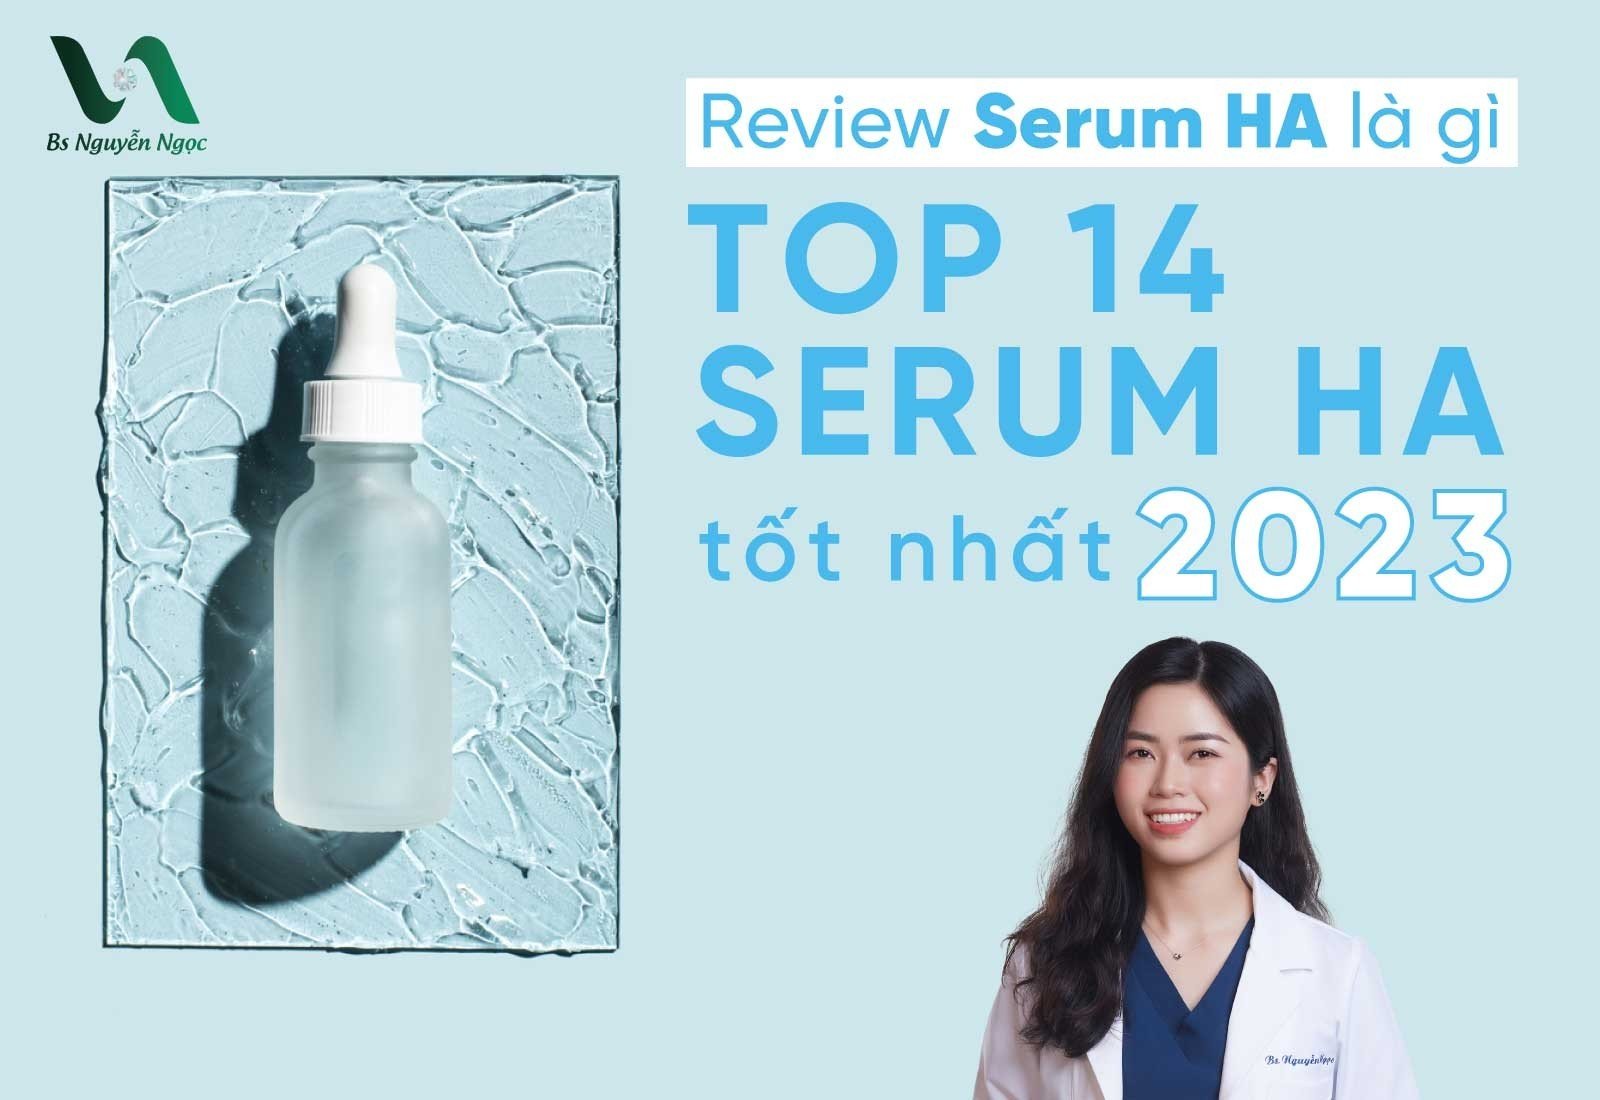 Review Serum HA là gì? Top 14 Serum HA tốt nhất 2023